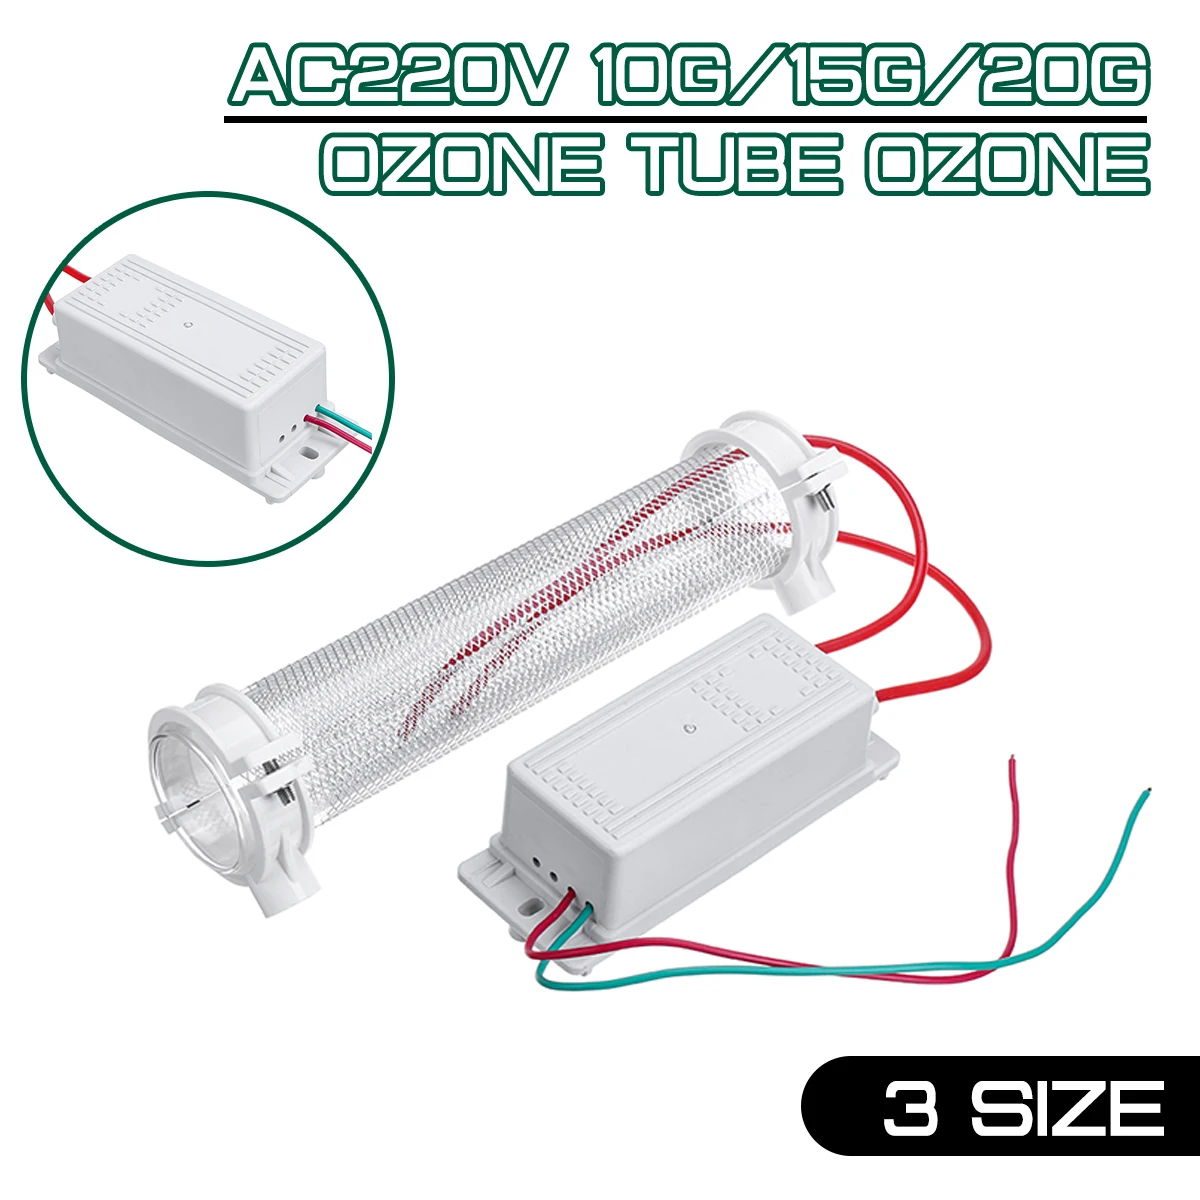 

10G/15G/20G Ozone tube ozone for ozone generator Silica Tube Ozone Generator Ozonizer For Air Purification Accessories AC220V